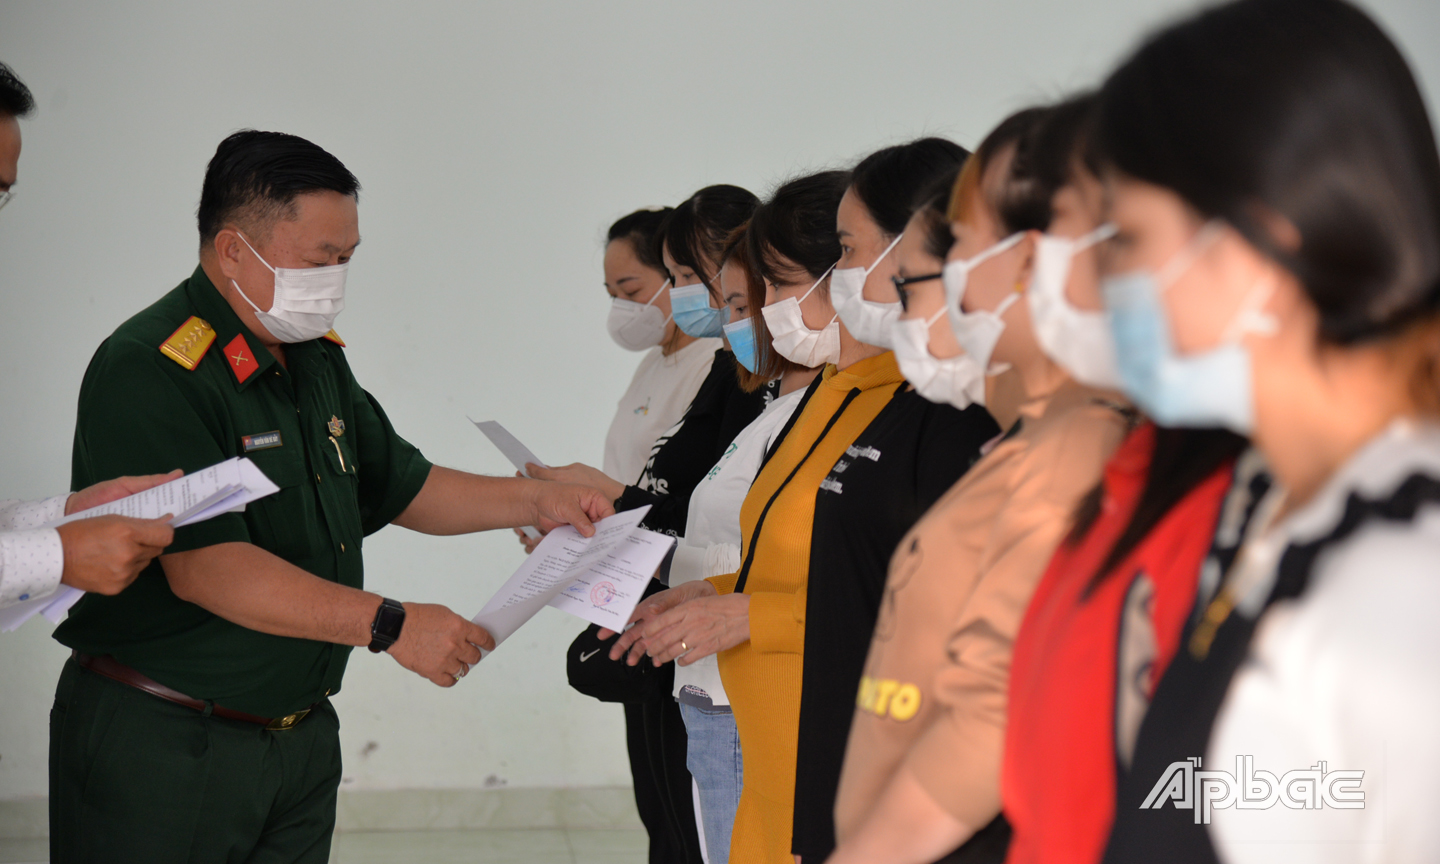 Đồng chí /Nguyễn Văn Bé Bảy, Phó Chỉ huy trưởng Bộ Chỉ huy quân sự tỉnh trao chứng nhận hoàn thành cách ly y tế cho công dân